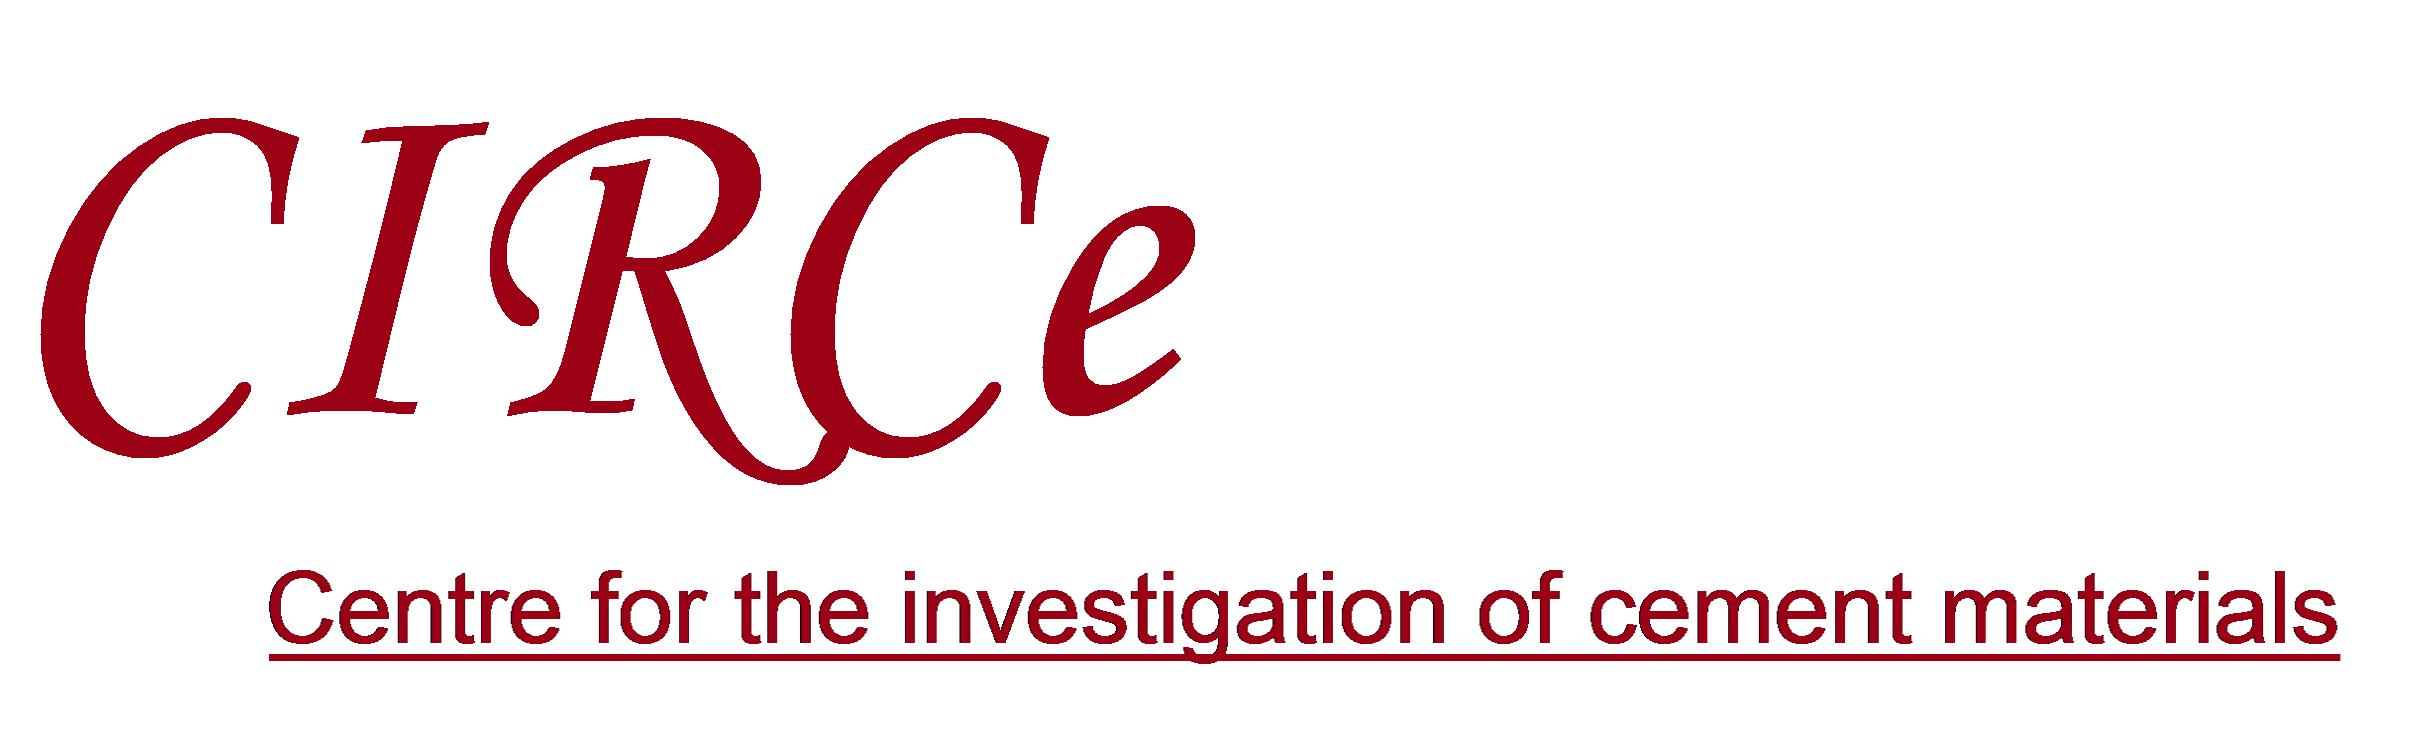 Logo CIRCe